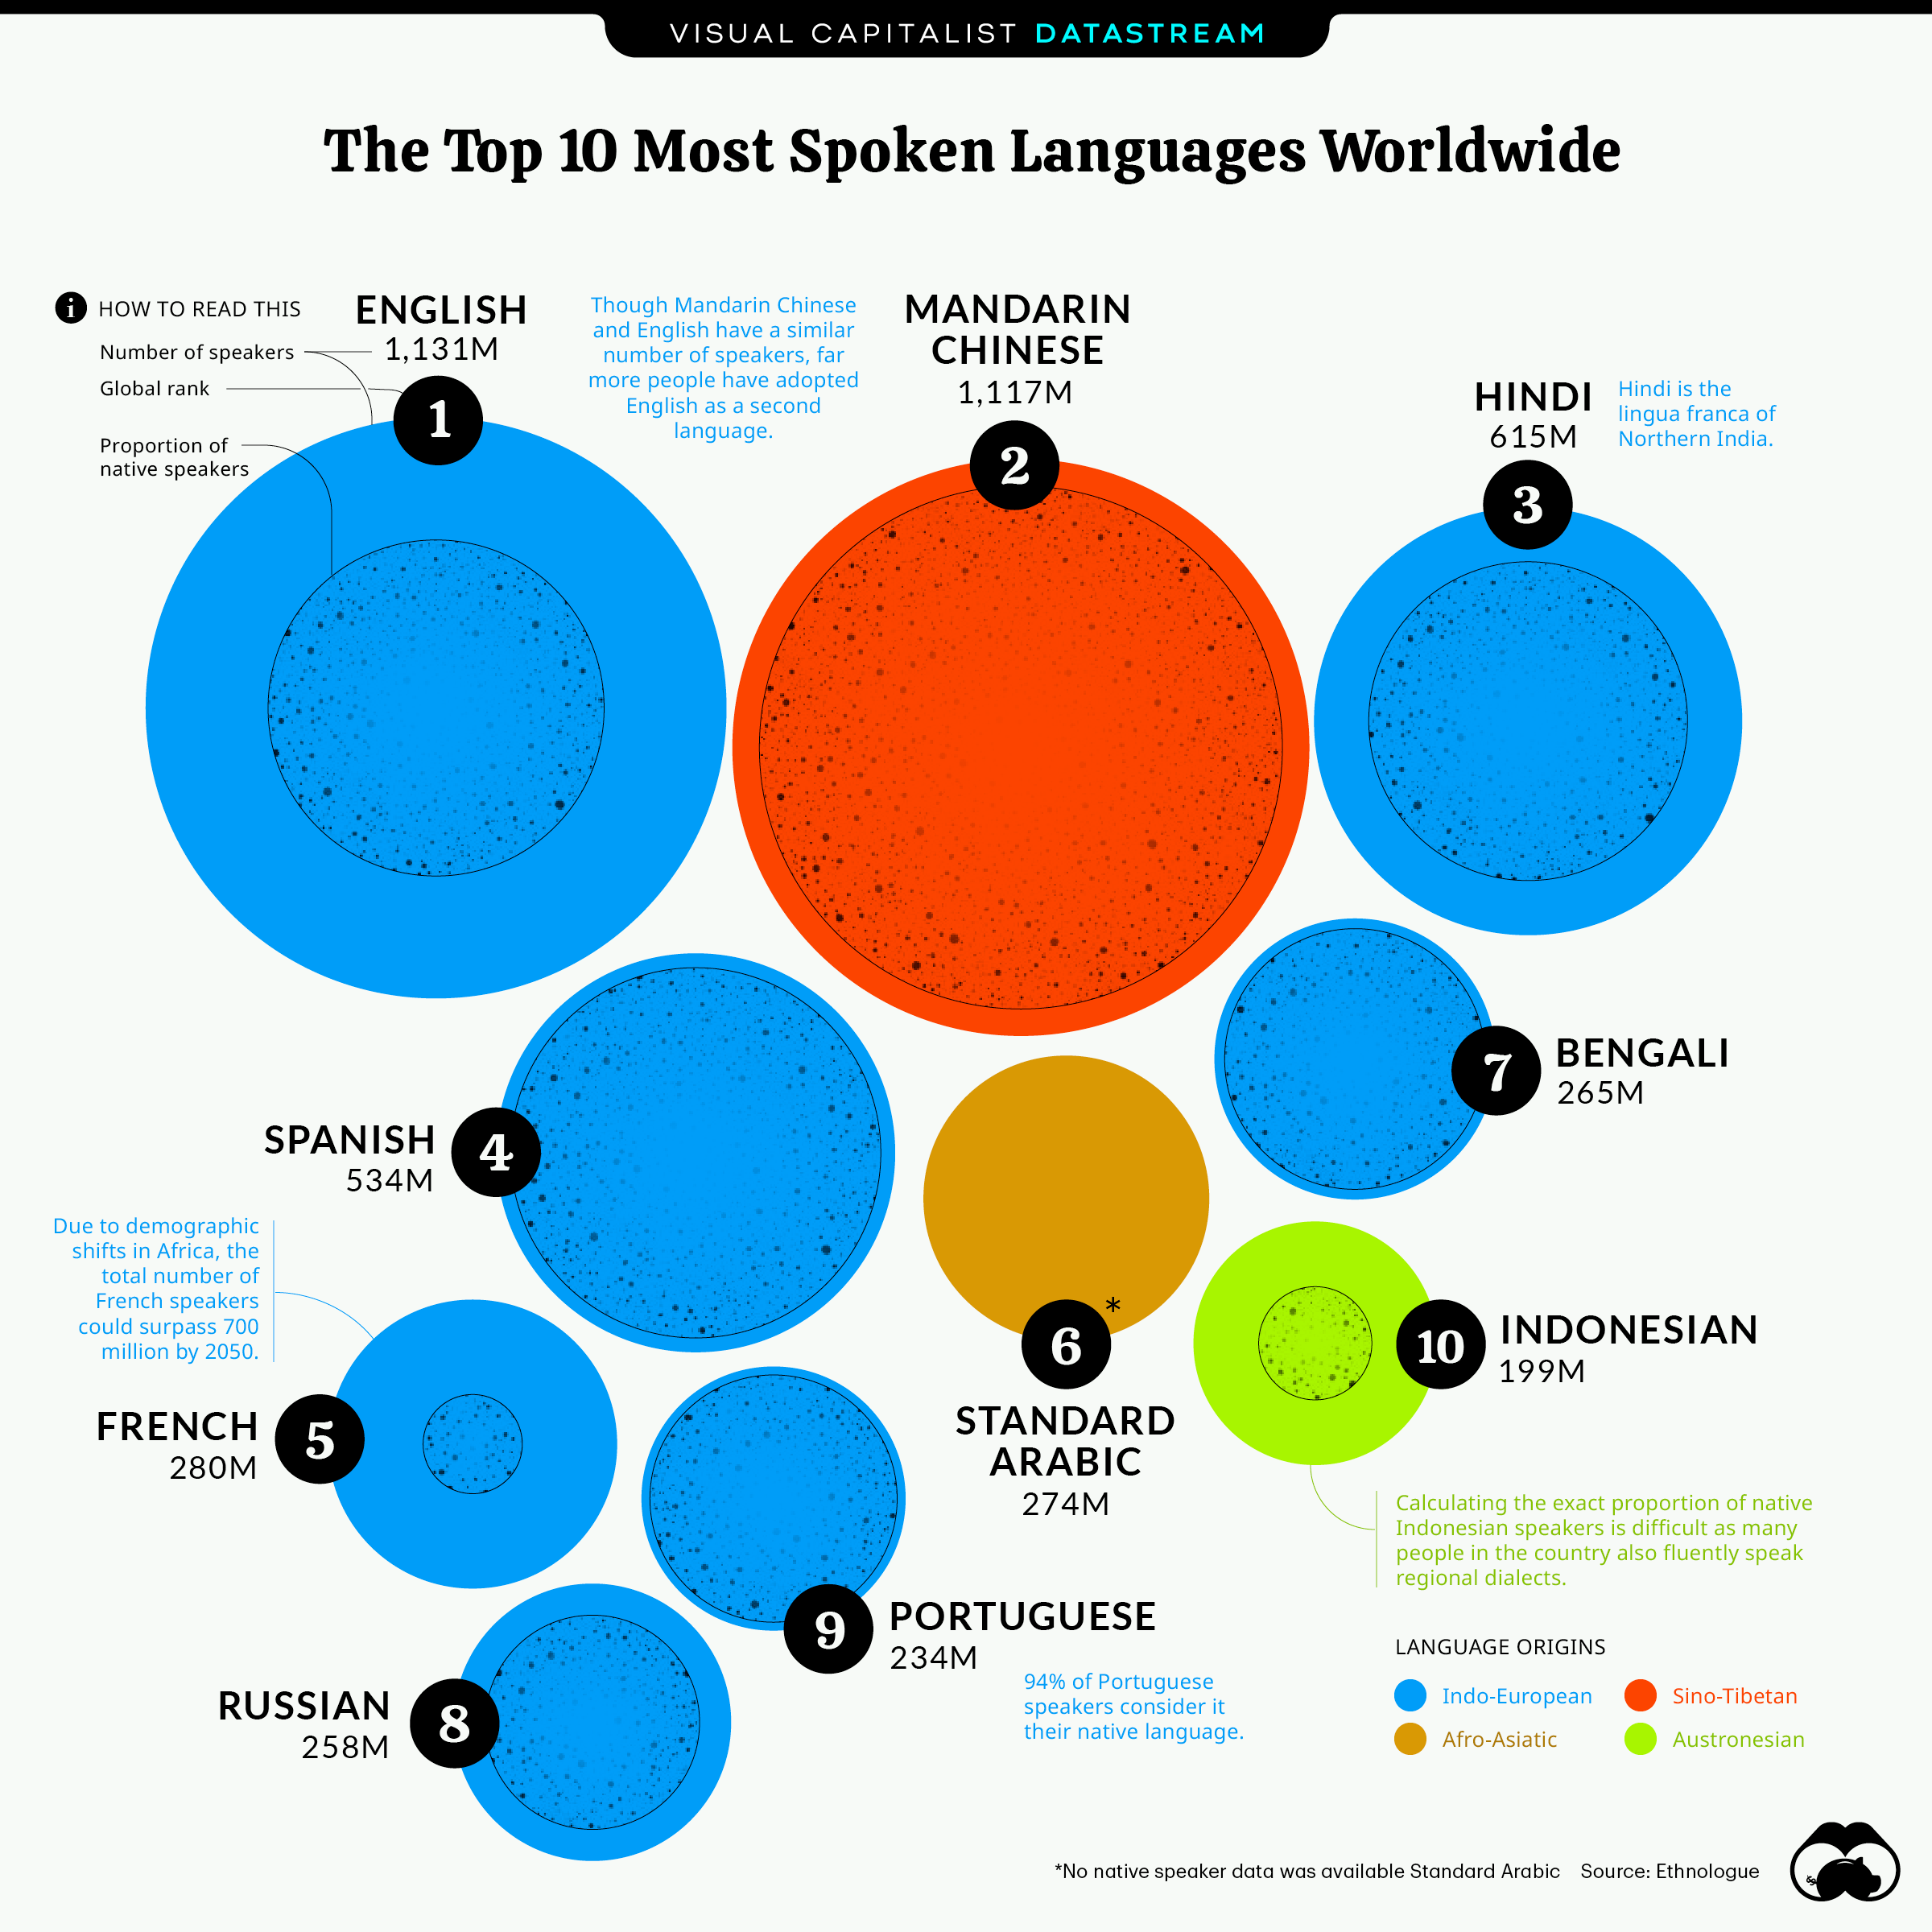 speaking languages